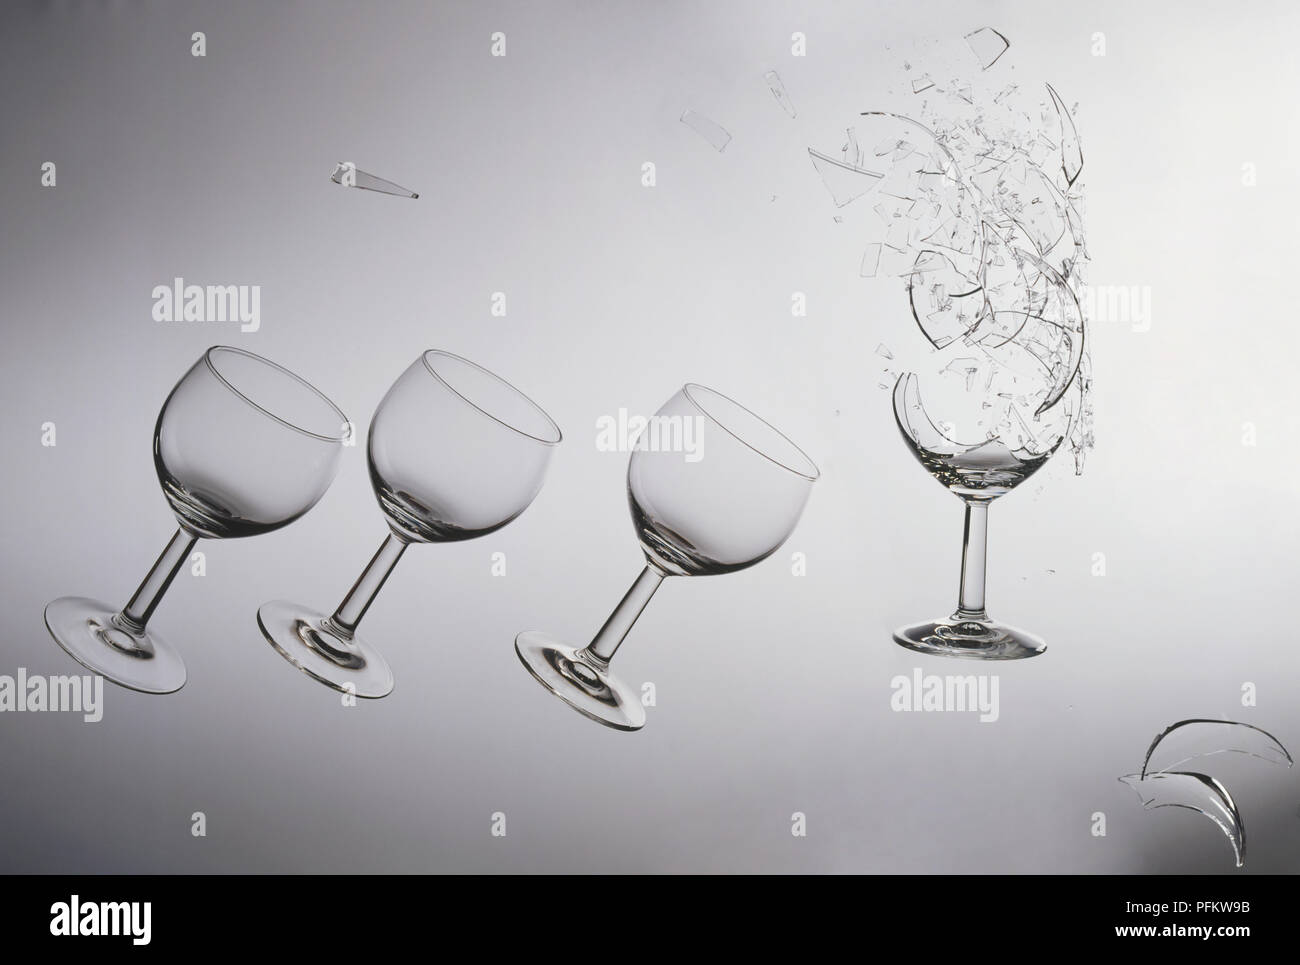 Stampa fotografica raffiguranti quattro bicchieri di vino, uno di loro rotto con la base circondato da pezzi di vetro. Foto Stock